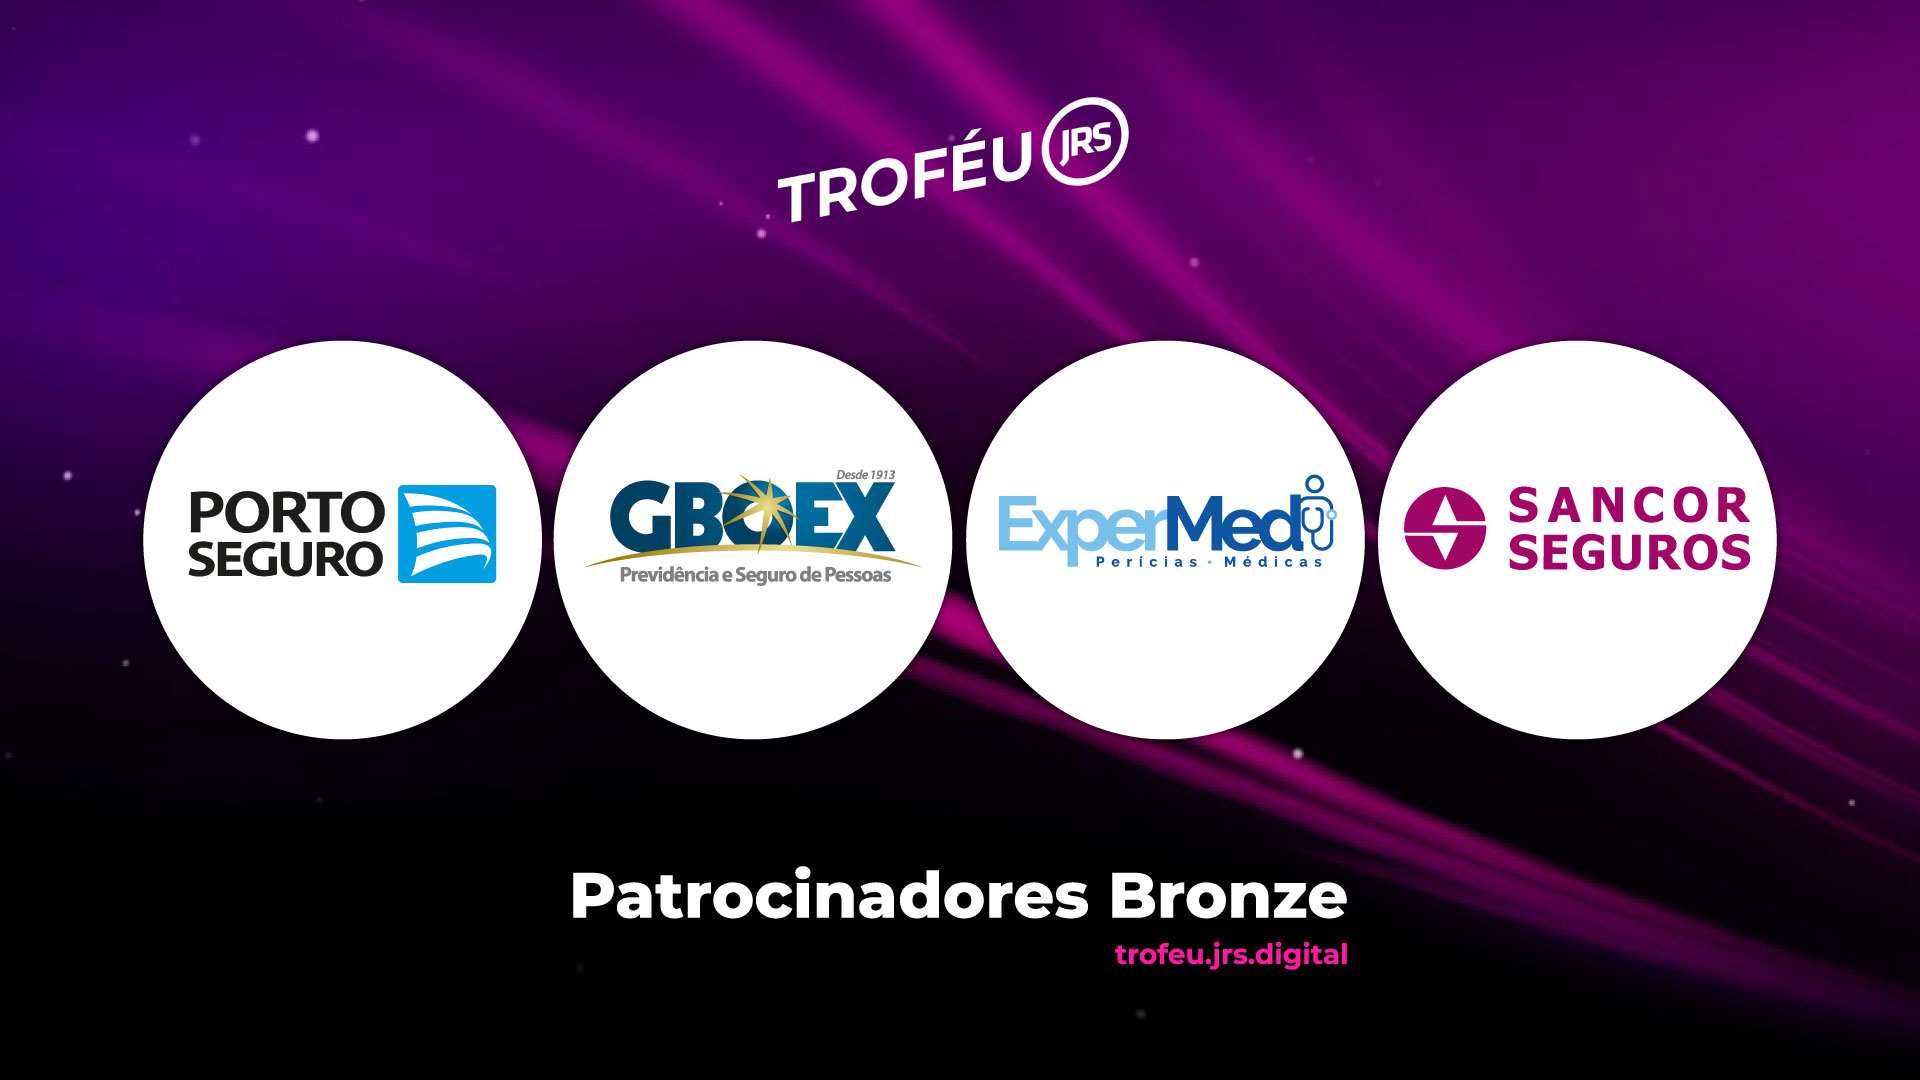 Porto Seguro, GBOEX, ExperMed e Sancor Seguros completam o Time Campeão de Patrocinadores Bronze do Troféu JRS